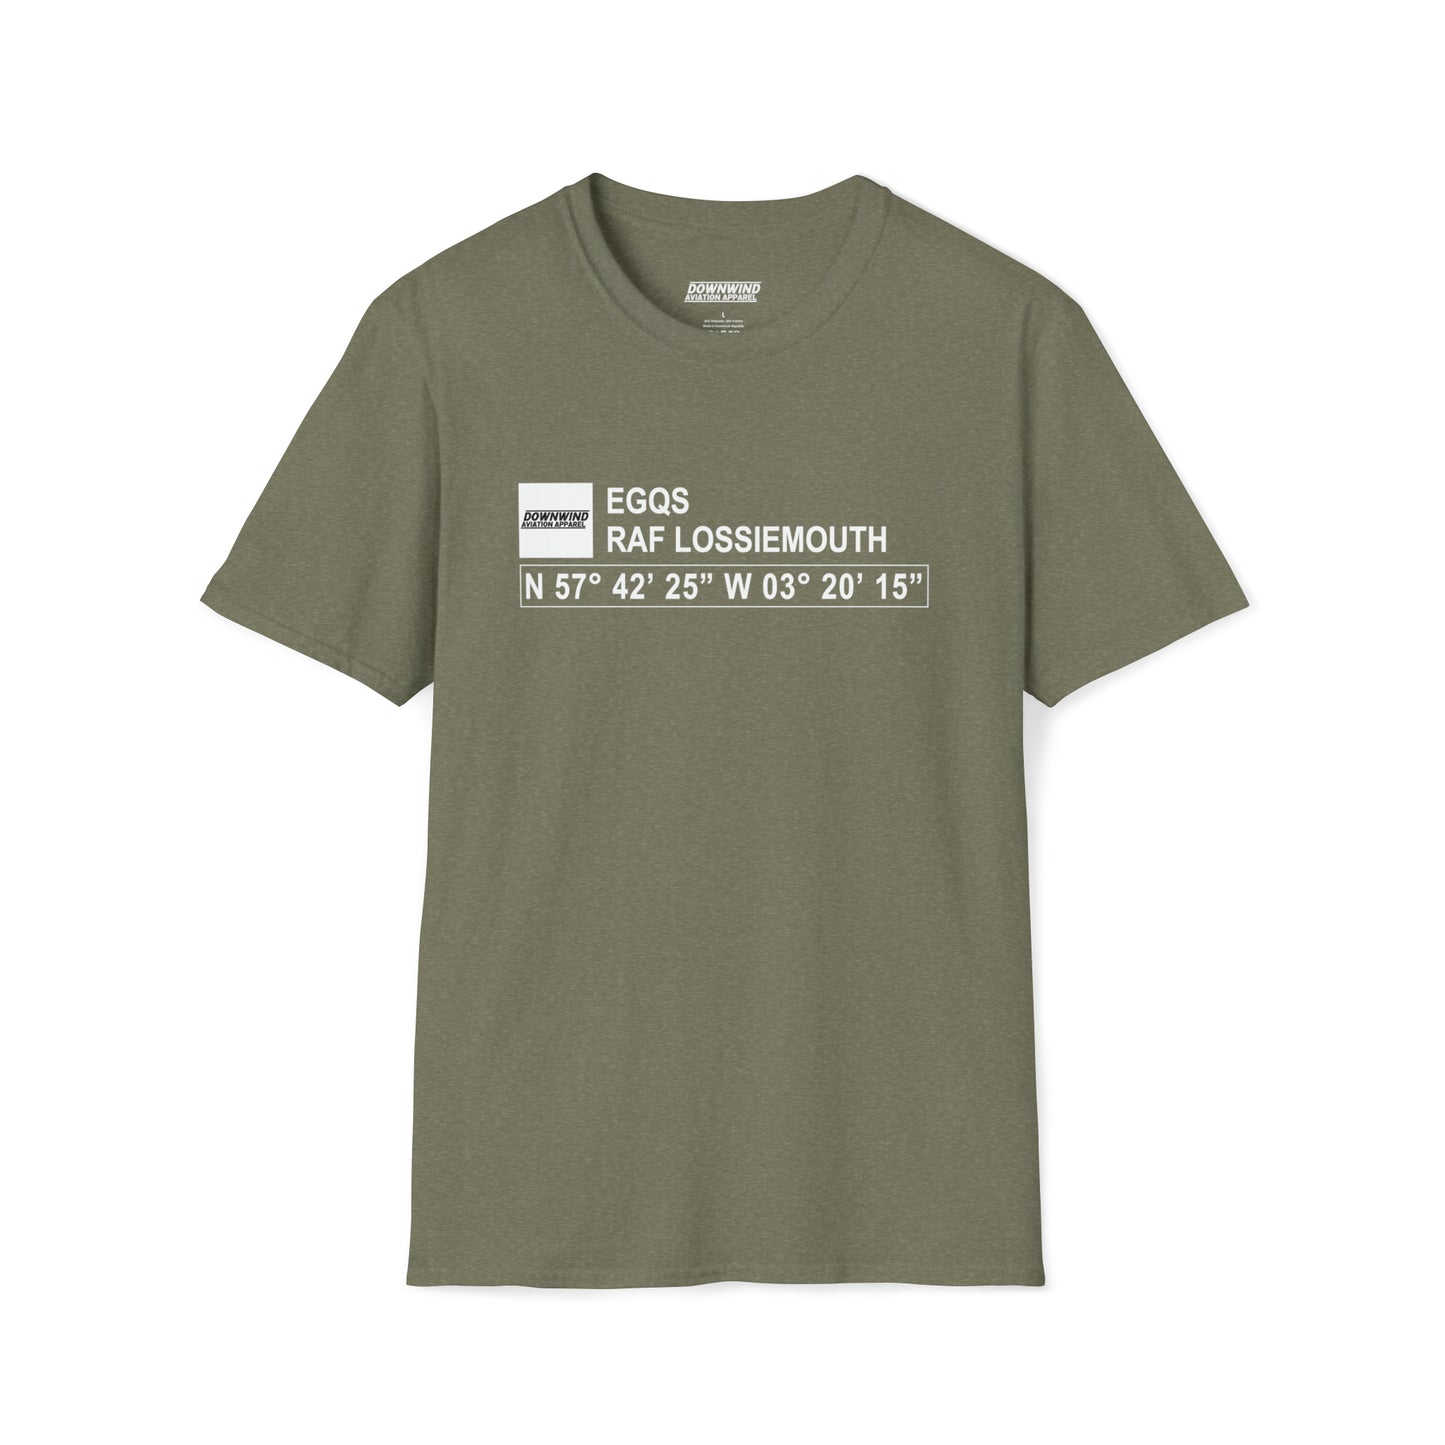 EGQS / RAF Lossiemouth T-Shirt